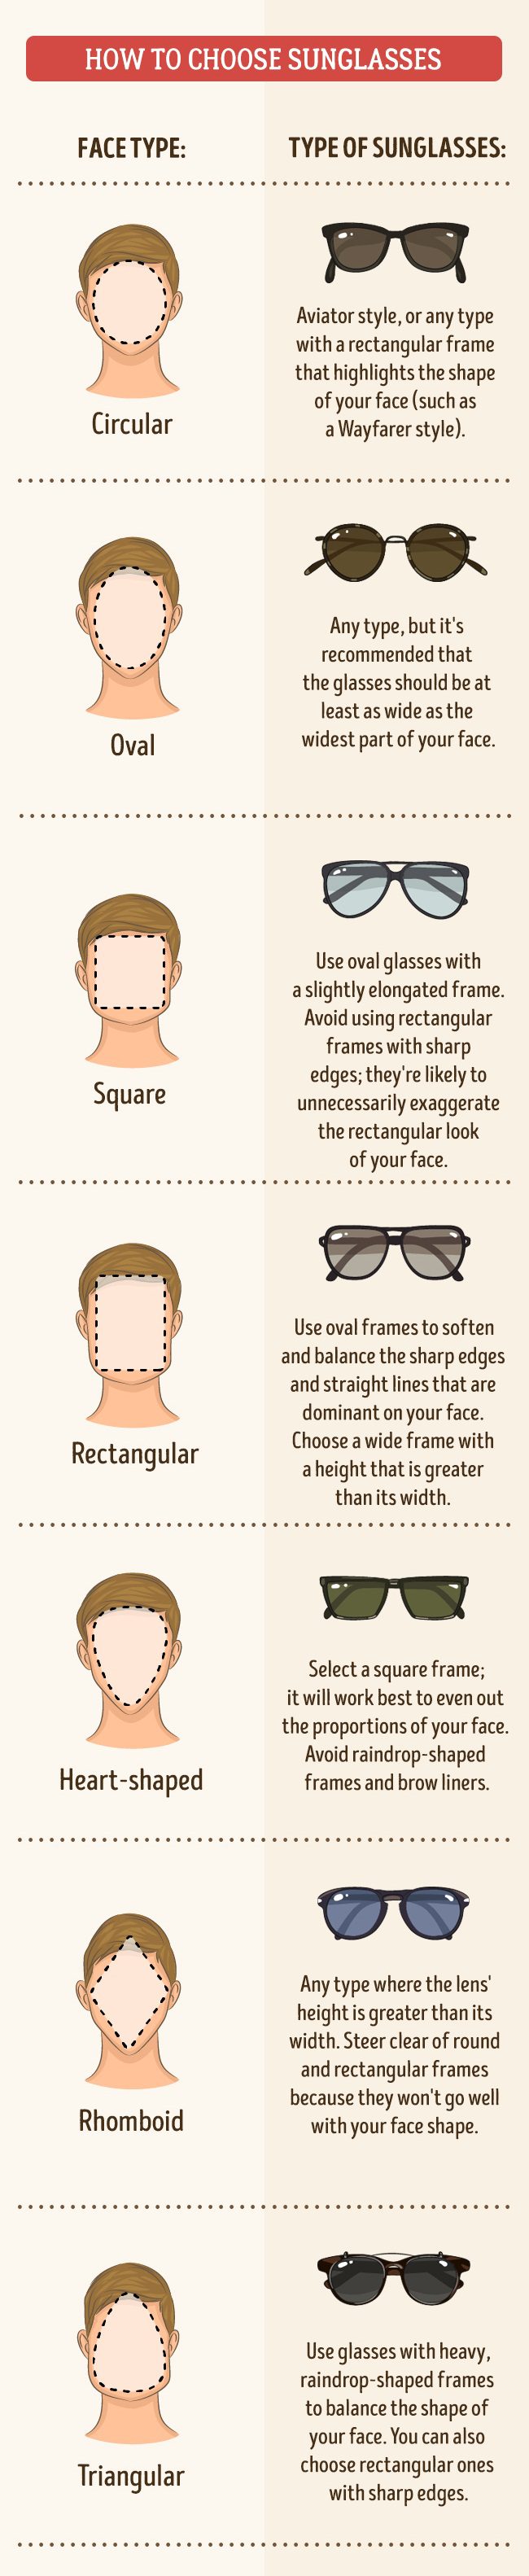 sunglasses guide 